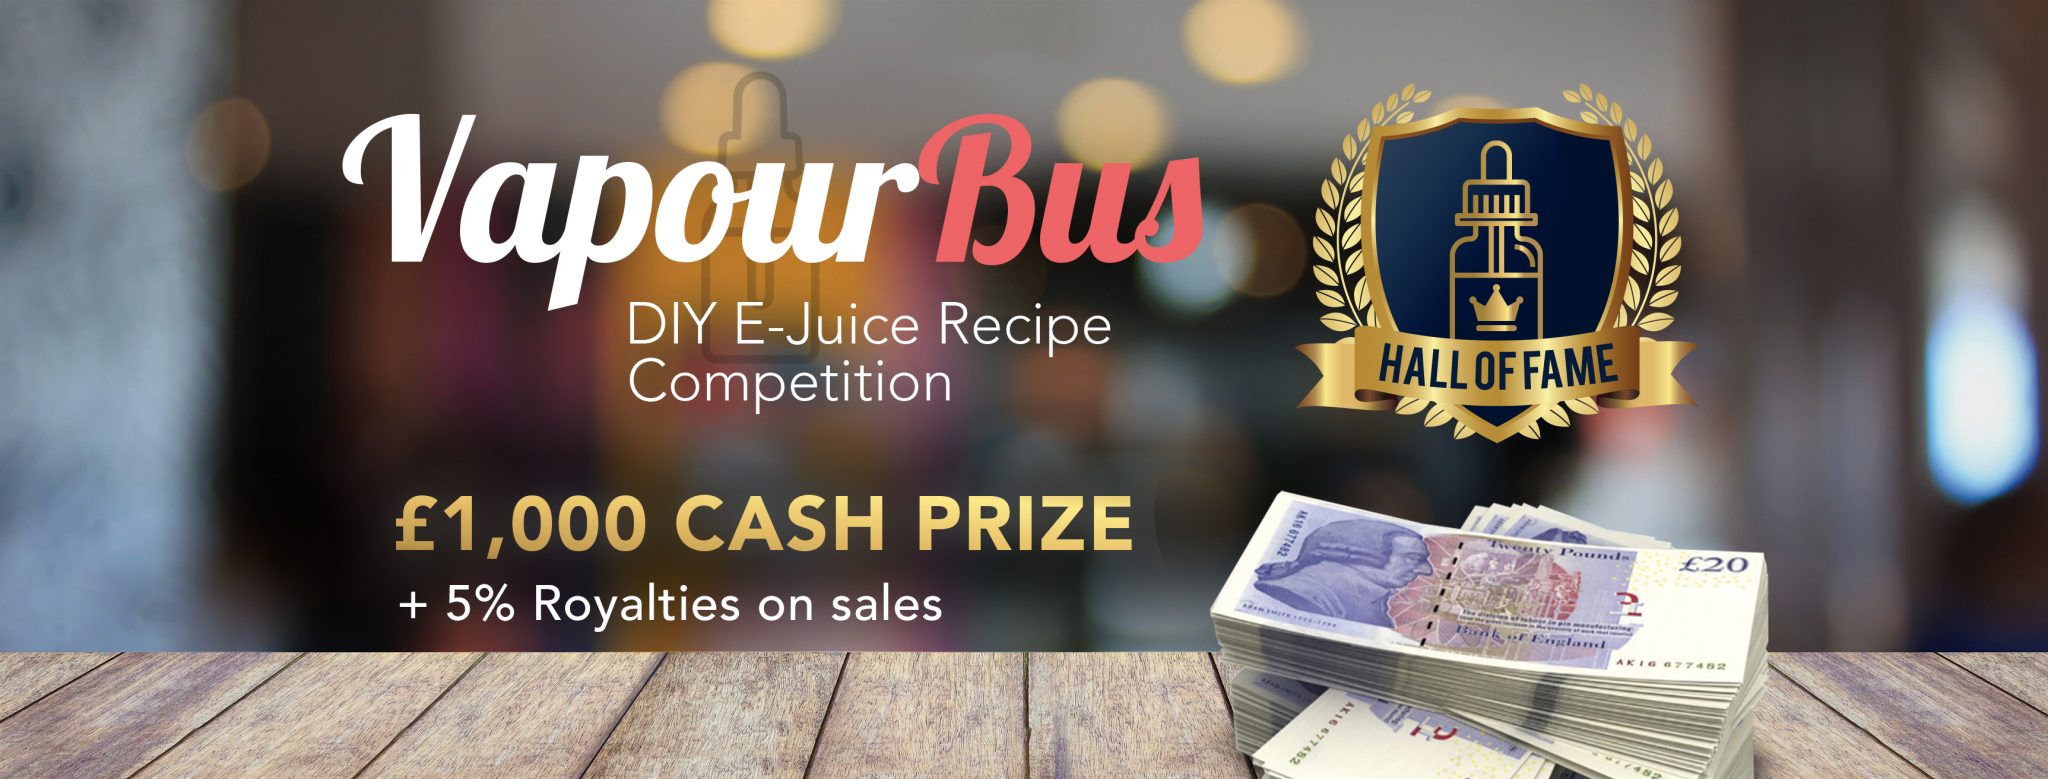 DIY E-Juice Flavour Shot Competition at VapourBus